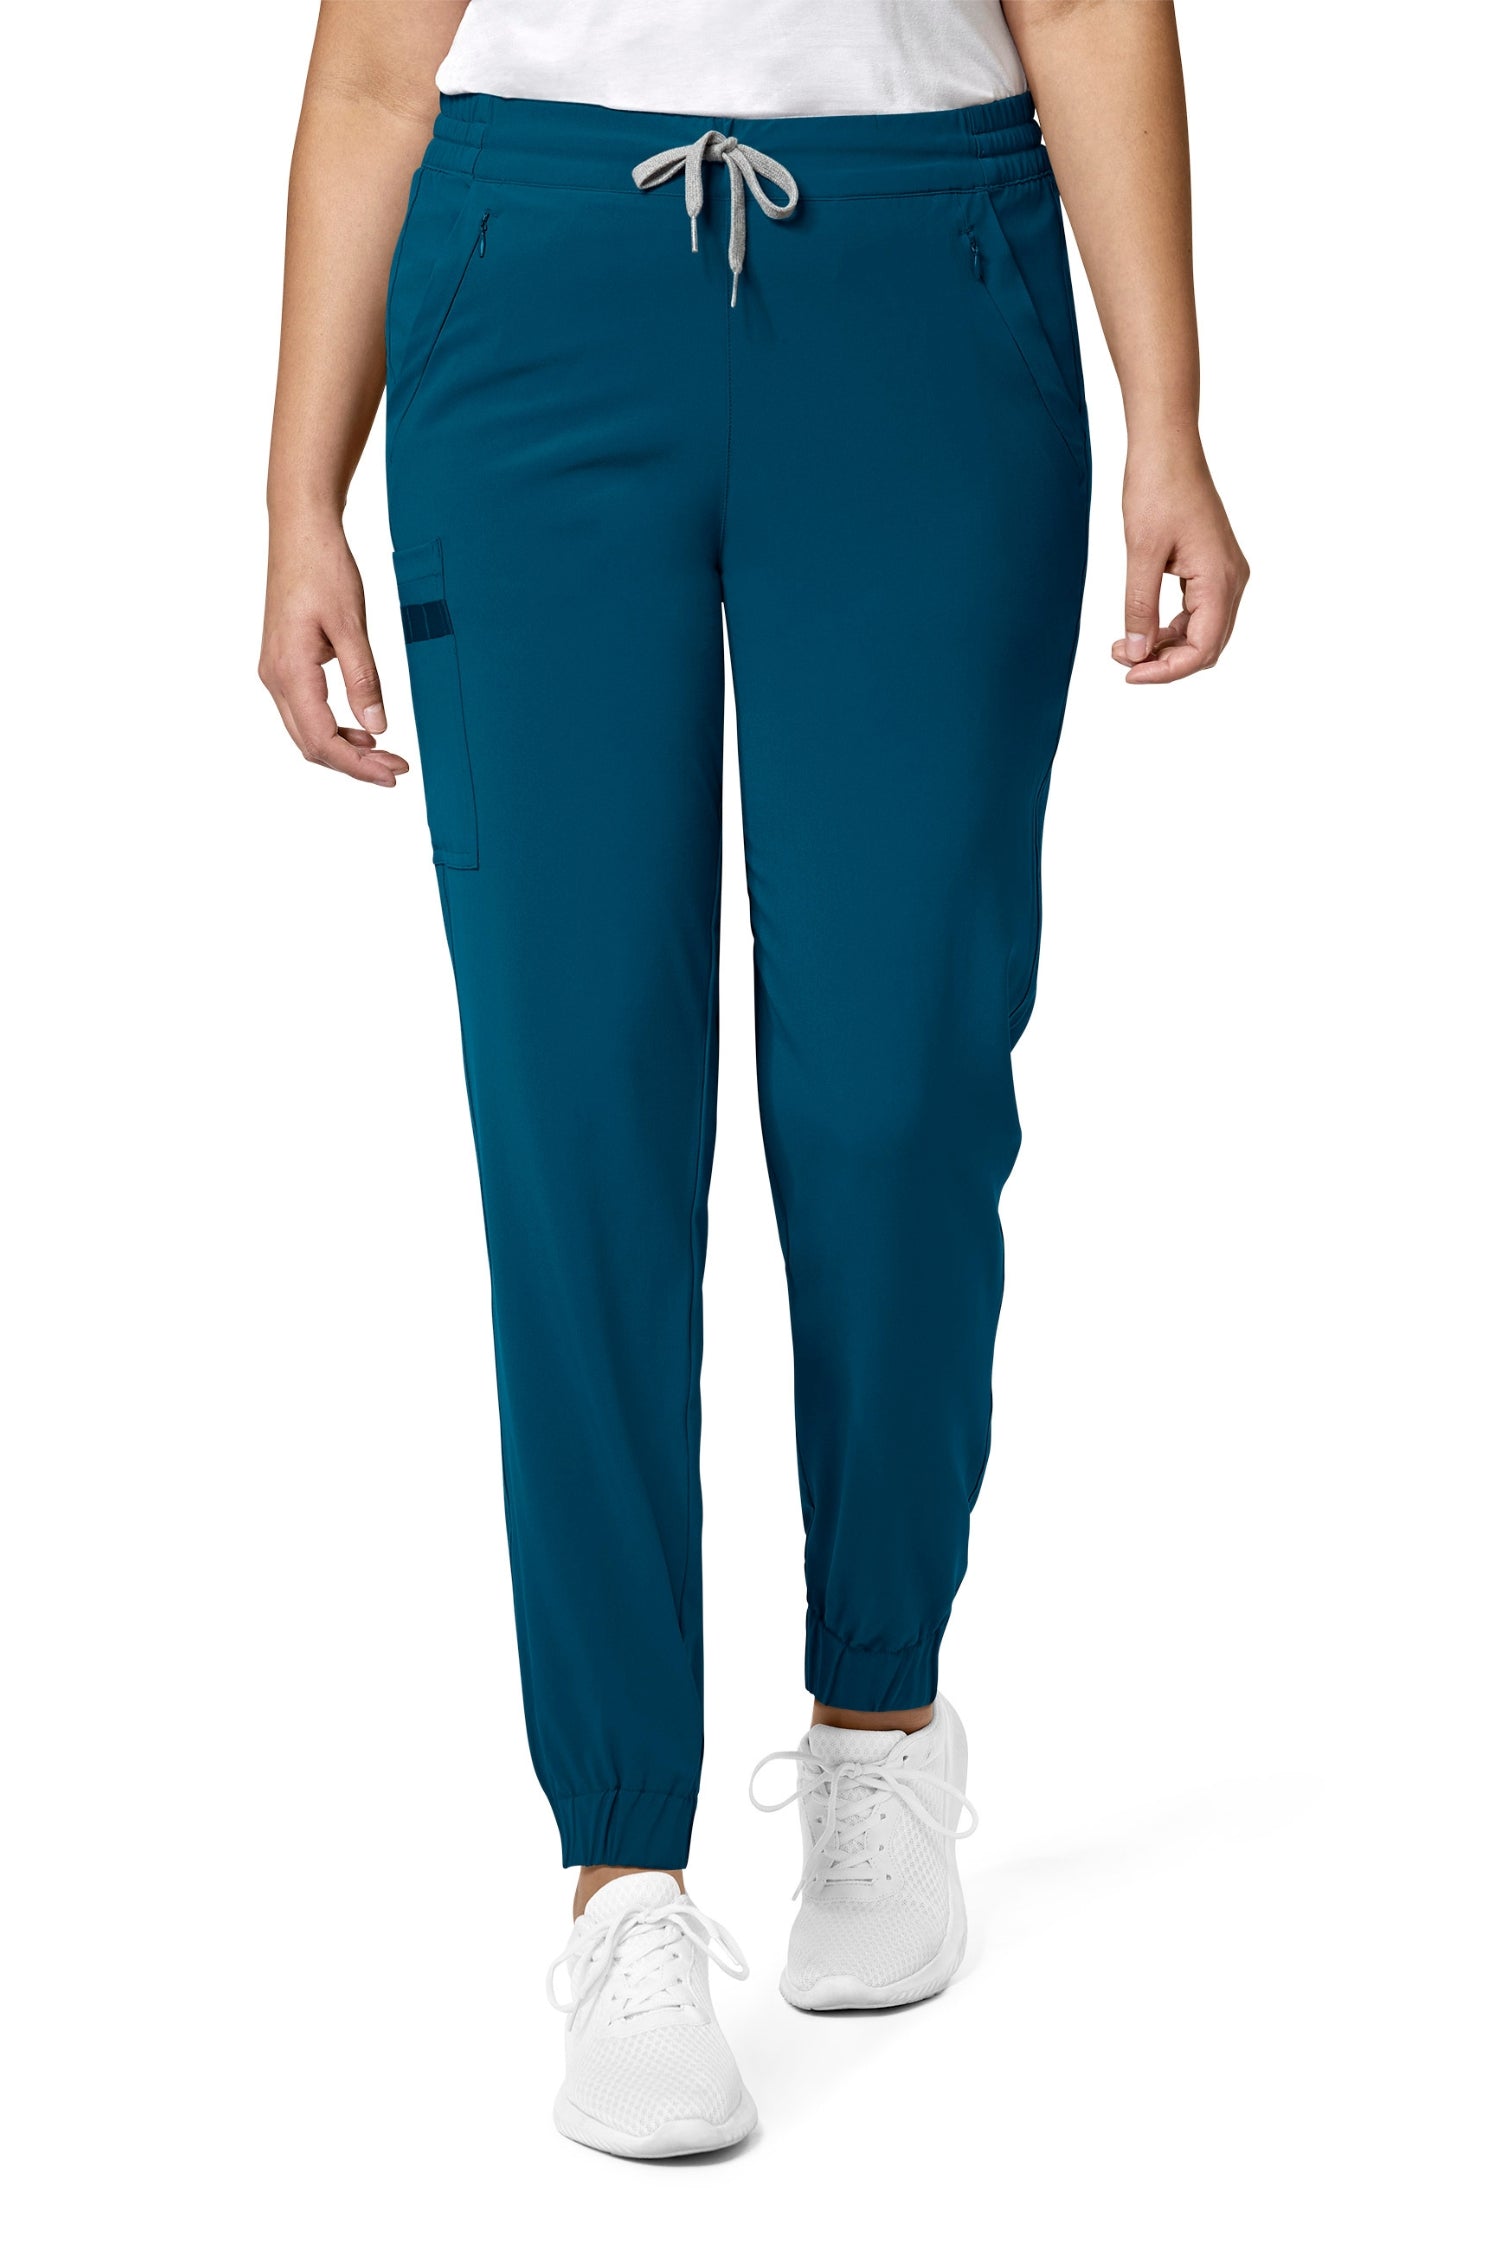 RENEW - Pantalon médical femme bleu turquoise coupe moderne avec poches cargo classiques